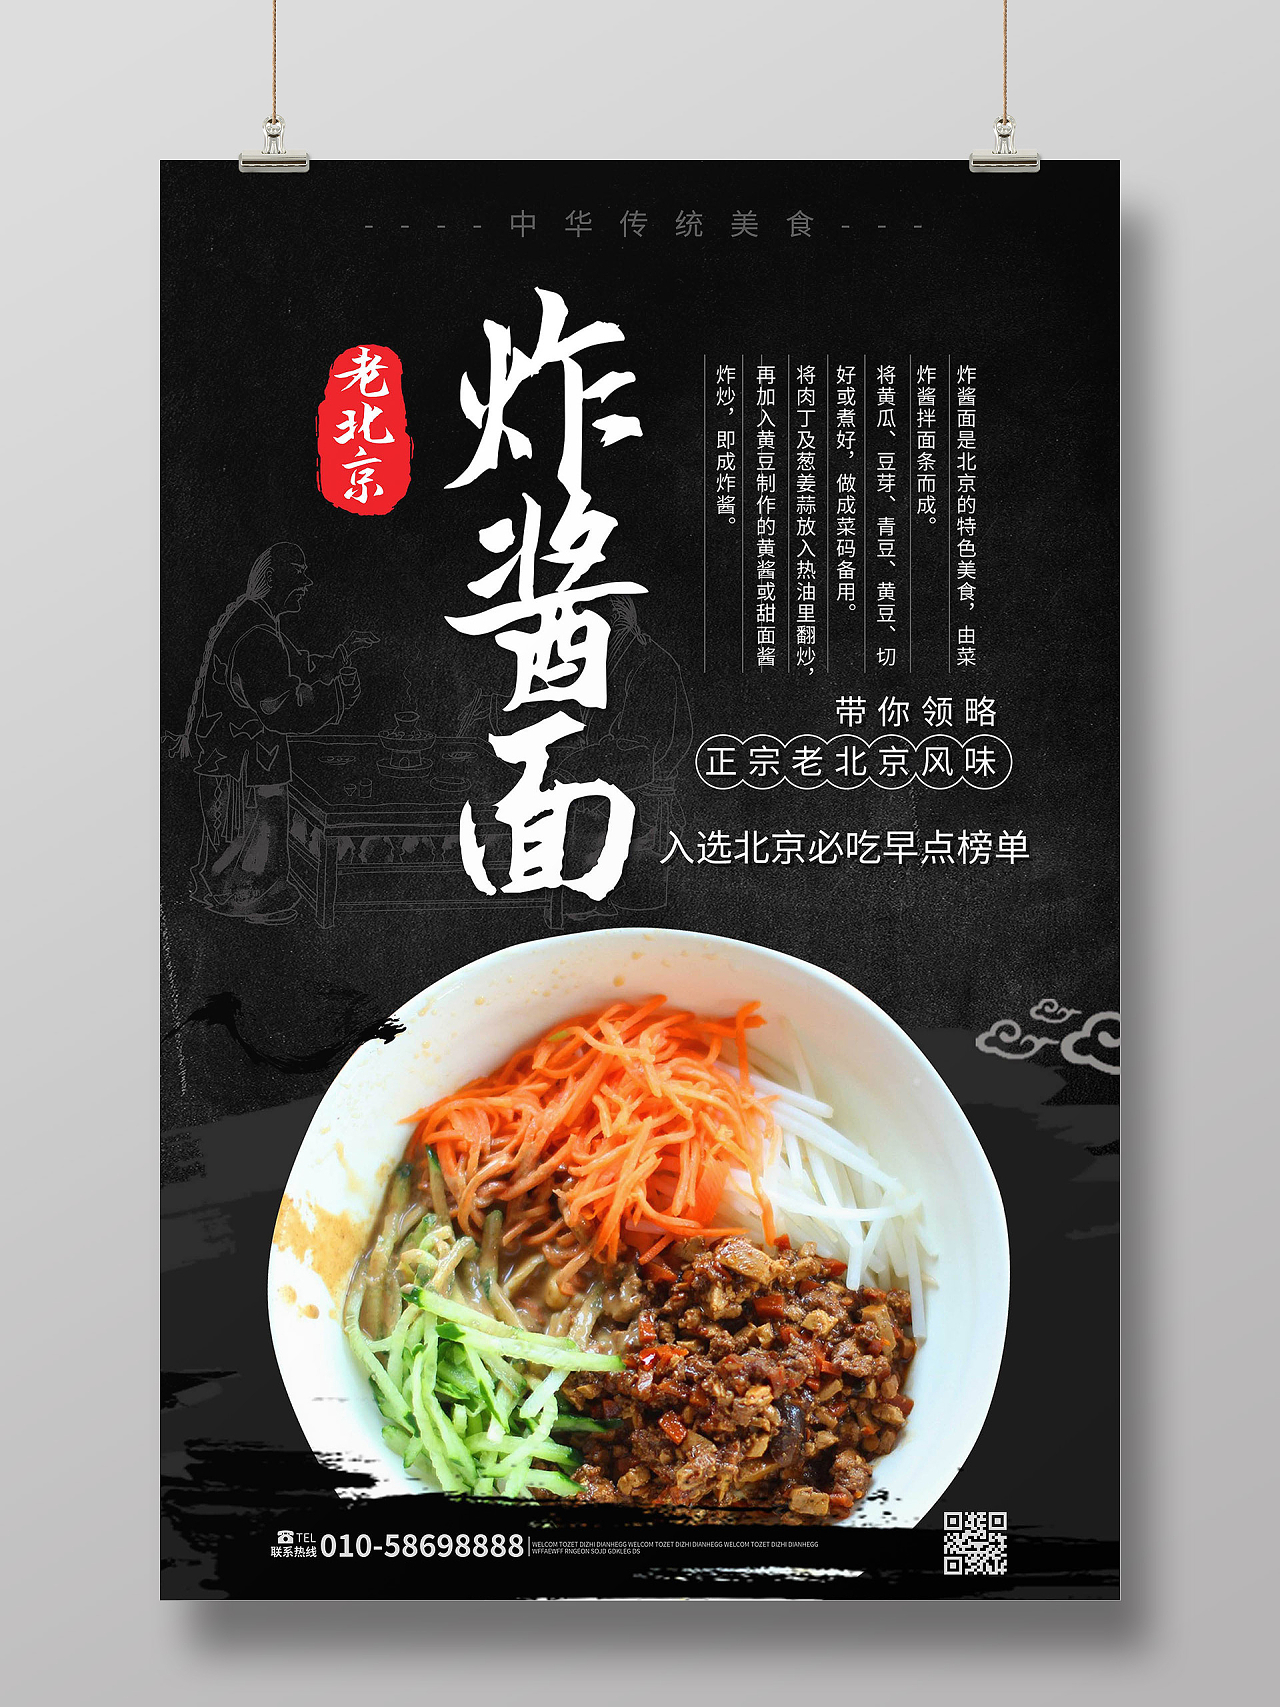 黑色背景简洁大气老北京炸酱面美食宣传促销海报设计